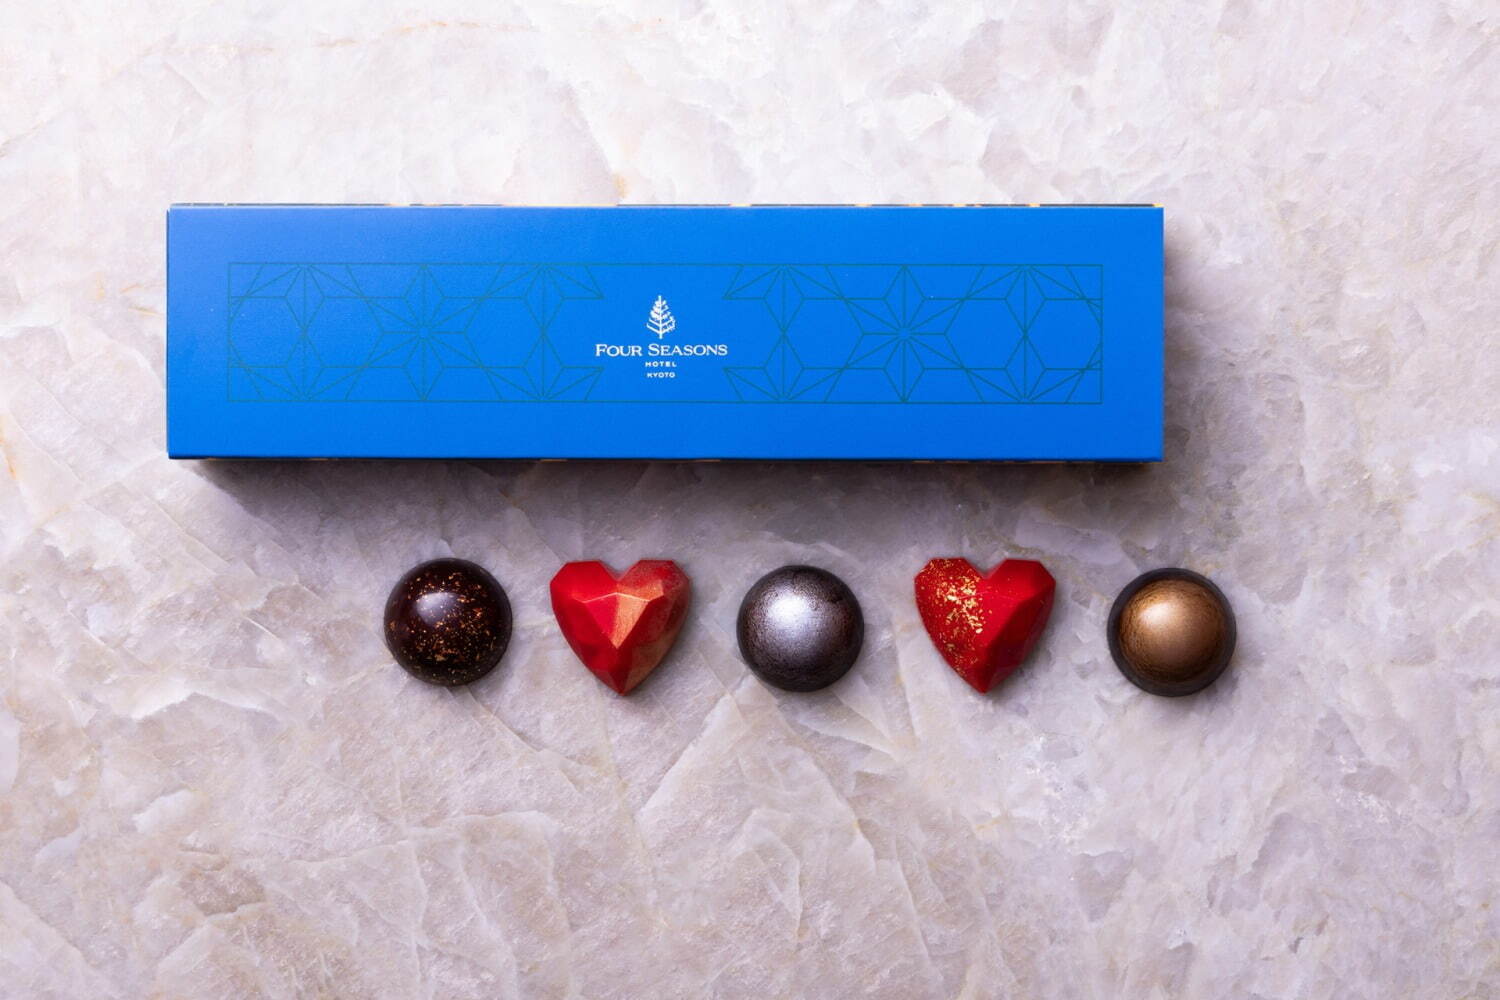 バレンタインチョコレートボンボン5種類入りボックス 1,950円